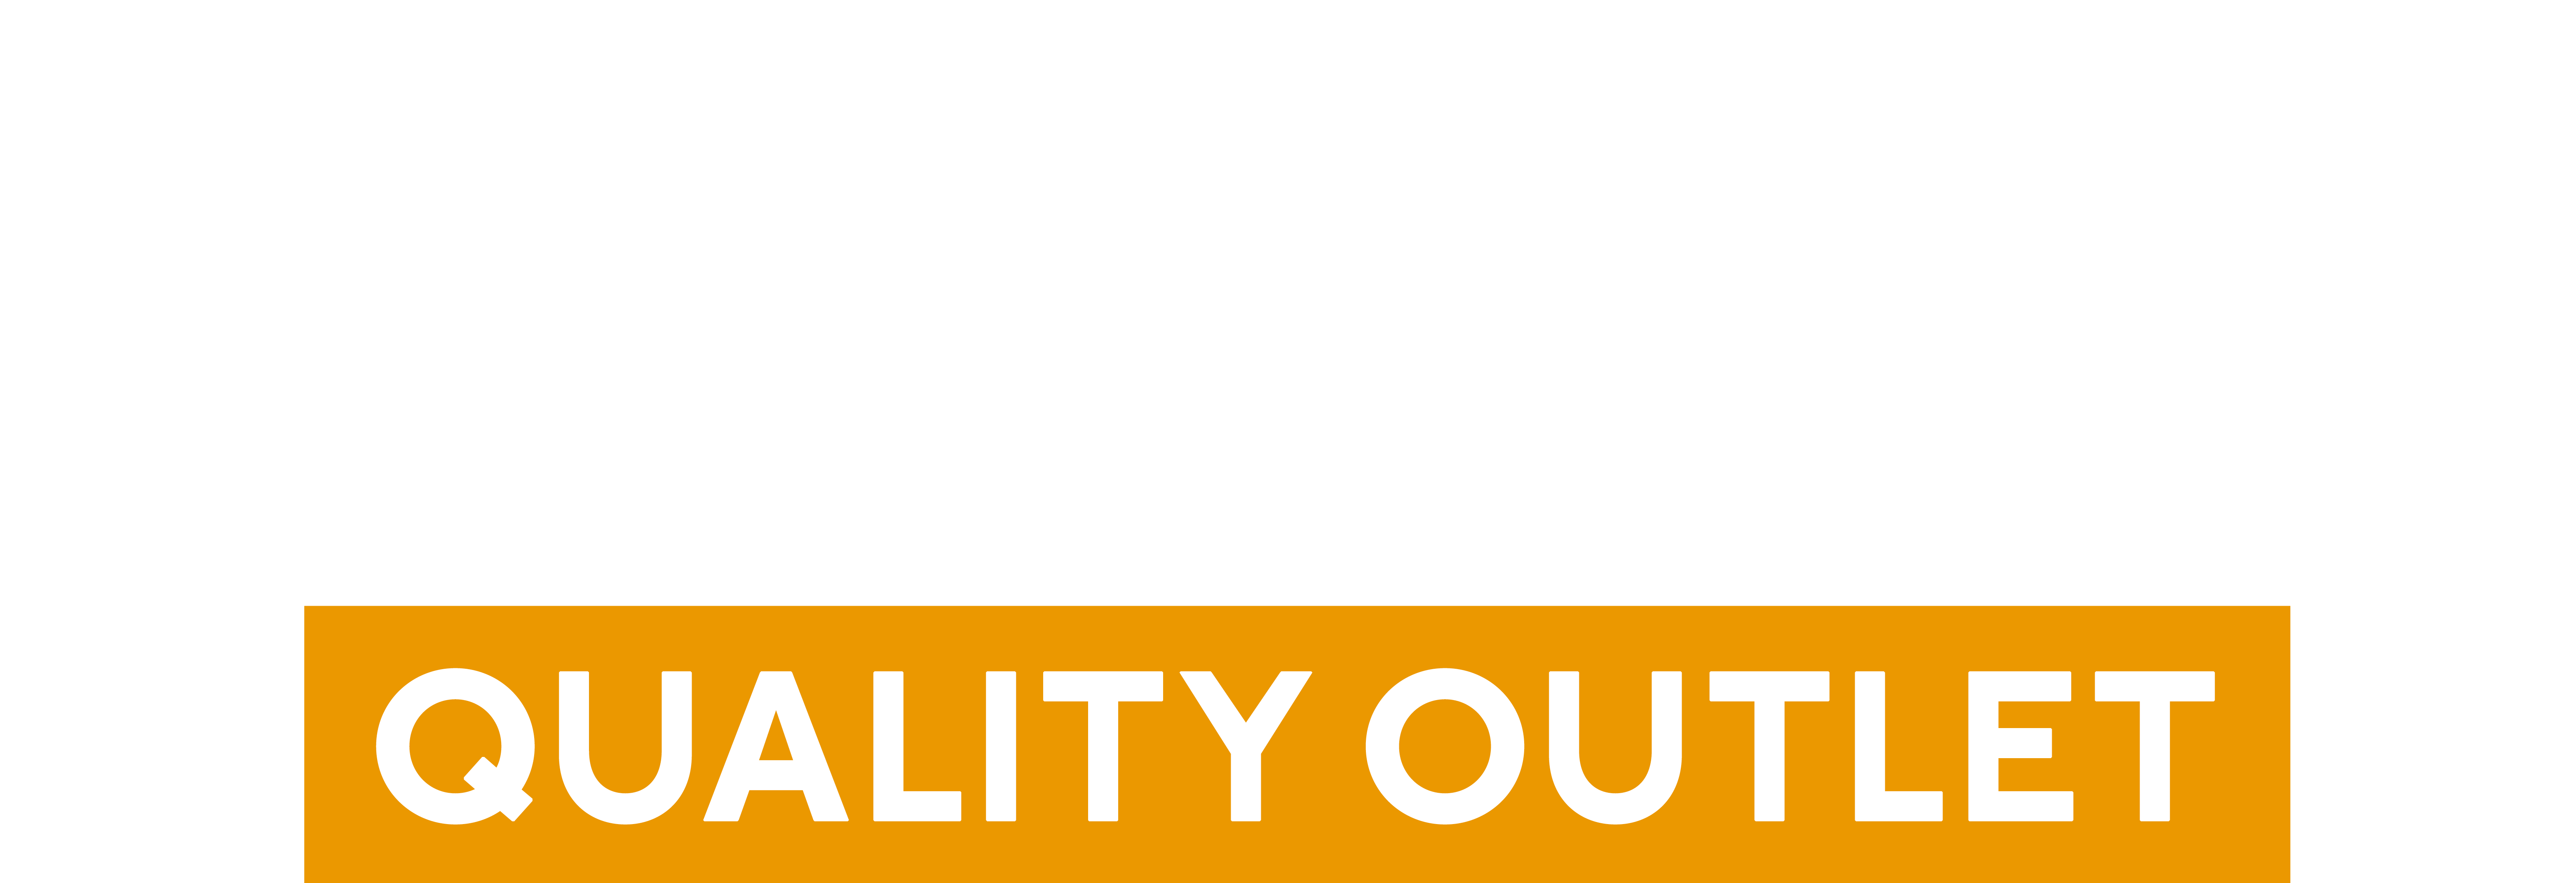 Scorett Outlet Logo